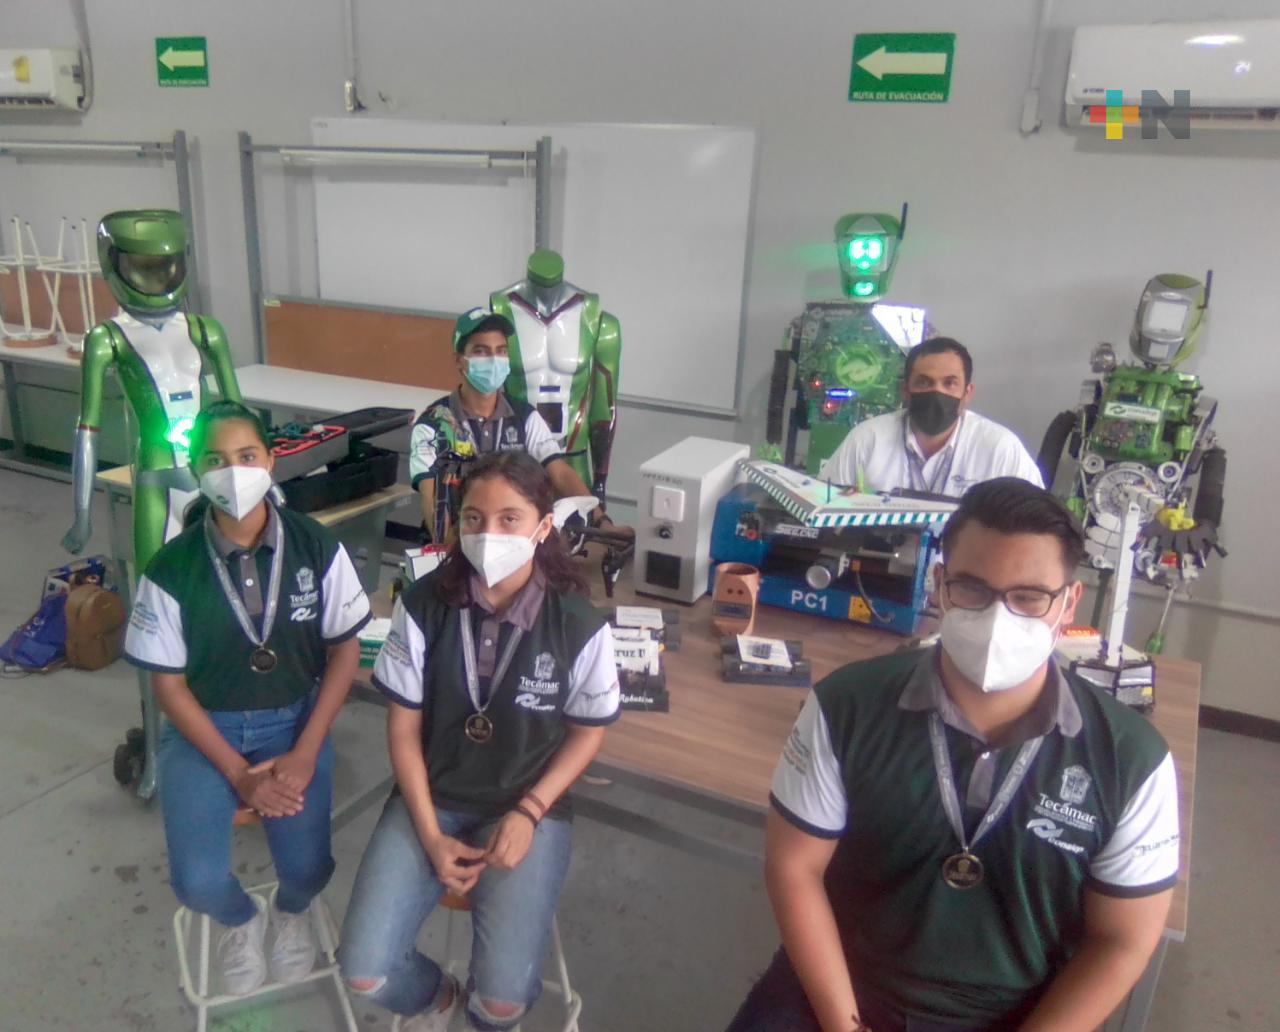 Estudiantes ganadores de robótica del Conalep Veracruz competirán en Estados Unidos y Japón